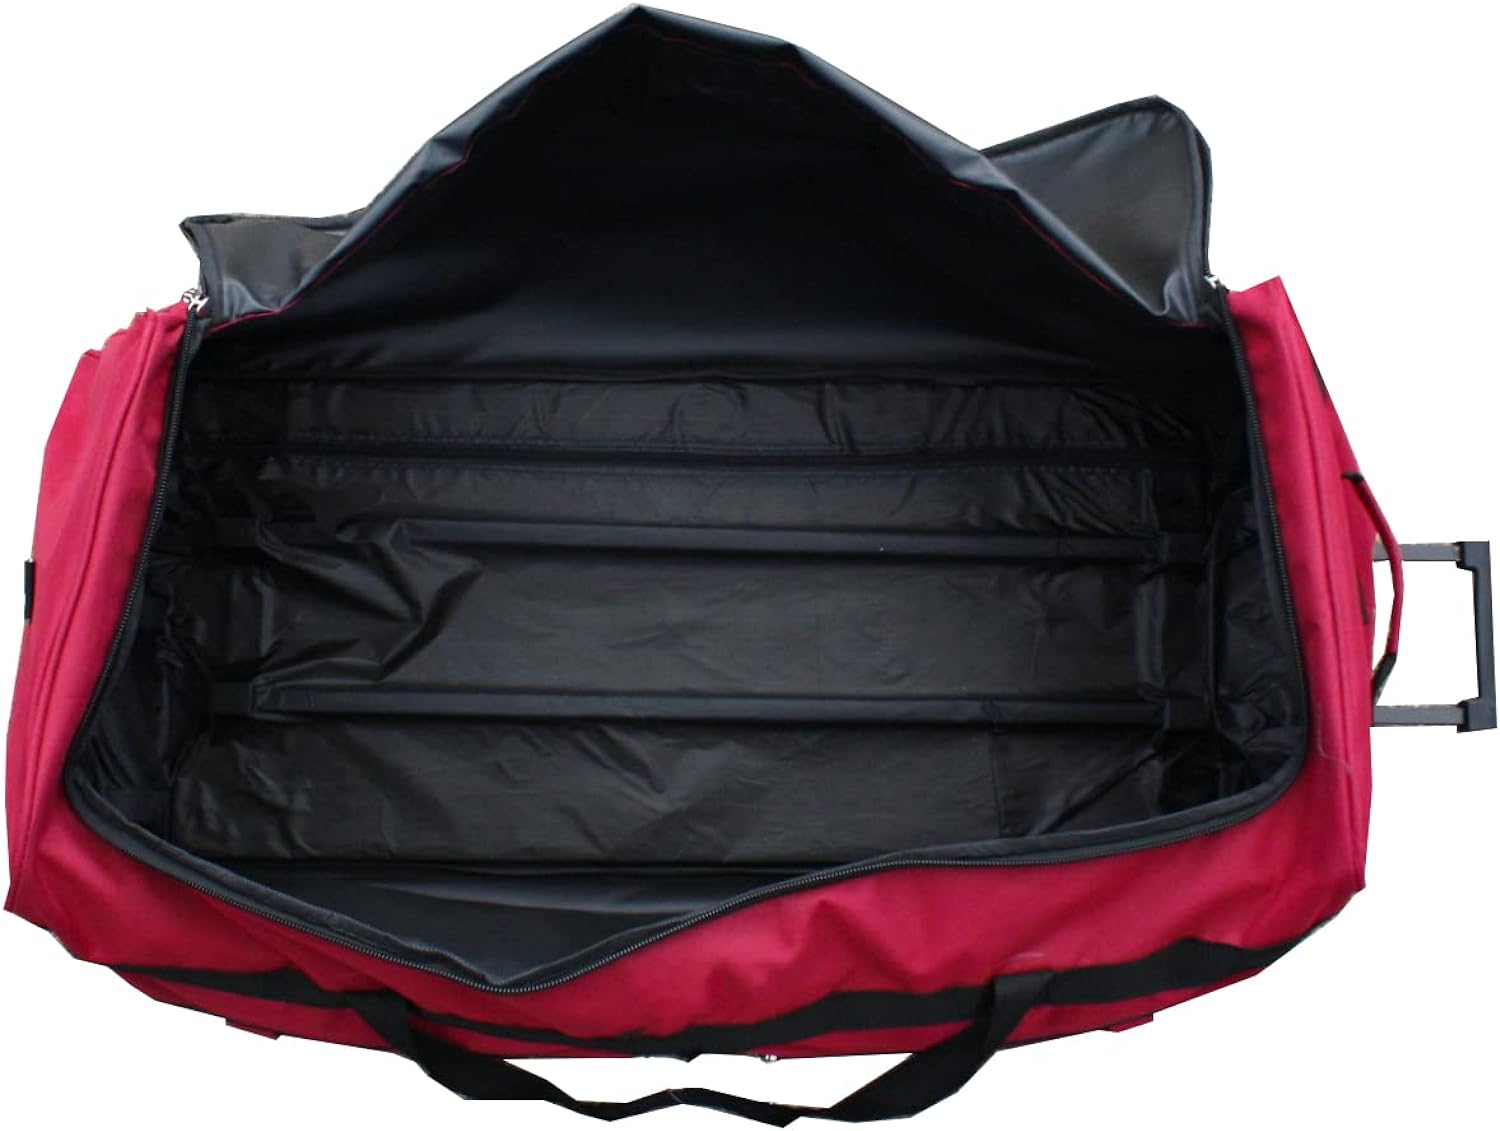 Gothamite 36-inch Rolling Duffle Bag with Wheels, Luggage Bag, Hockey Bag, XL Duffle Bag With Rollers, Heavy Duty (Fuchsia)